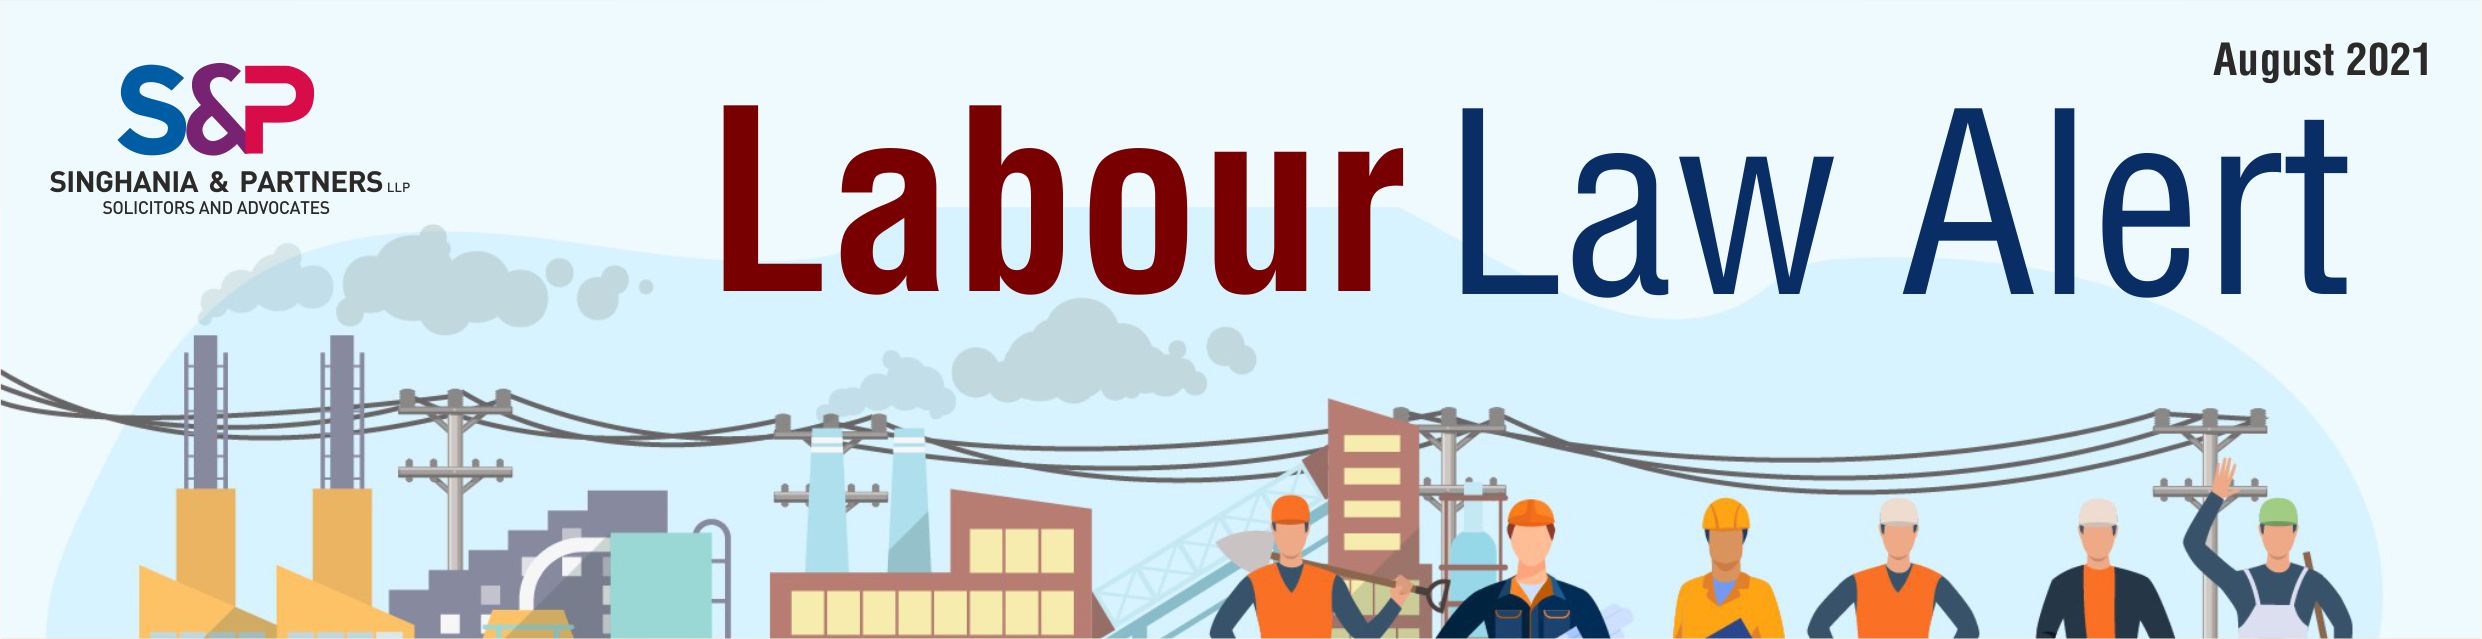 Labour Law Alert – August 2021